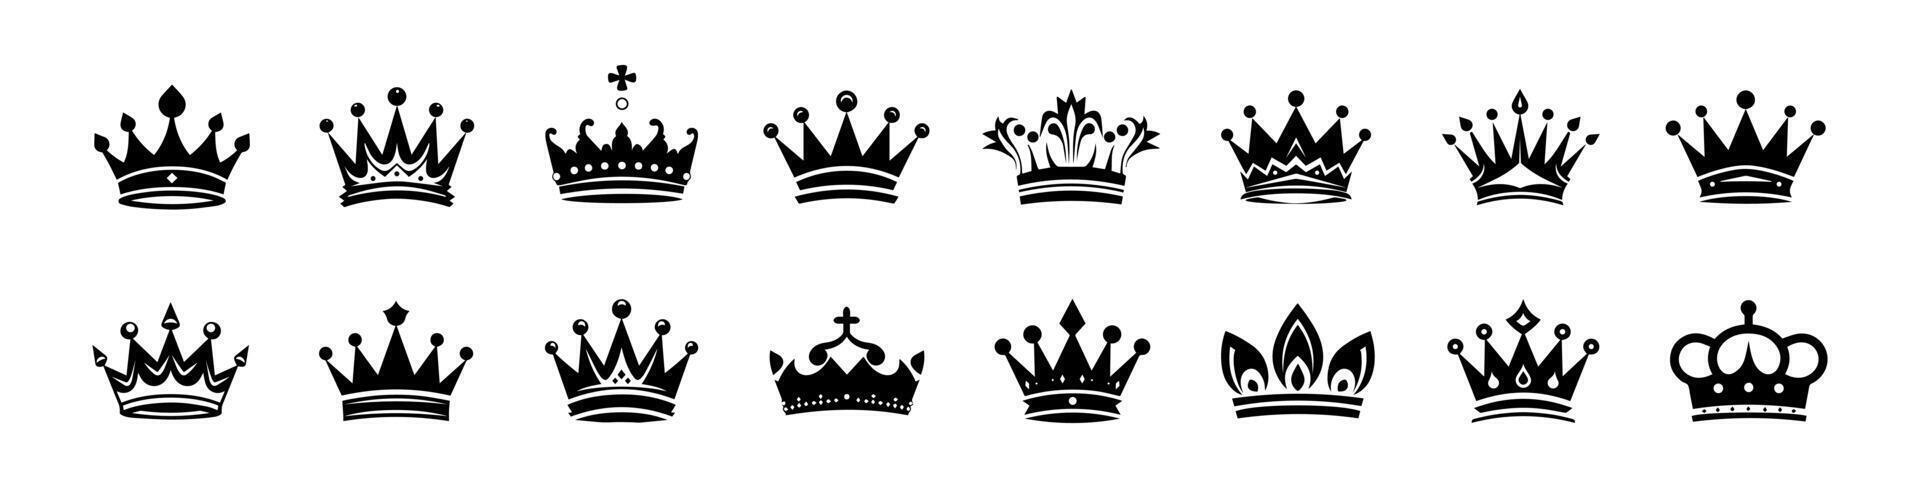 krona ikoner uppsättning. enkel, svart silhuetter av en kunglig kronor. vektor illustration isolerat på vit bakgrund. idealisk för logotyper, emblem, insignier. kan vara Begagnade i varumärke, webb design.